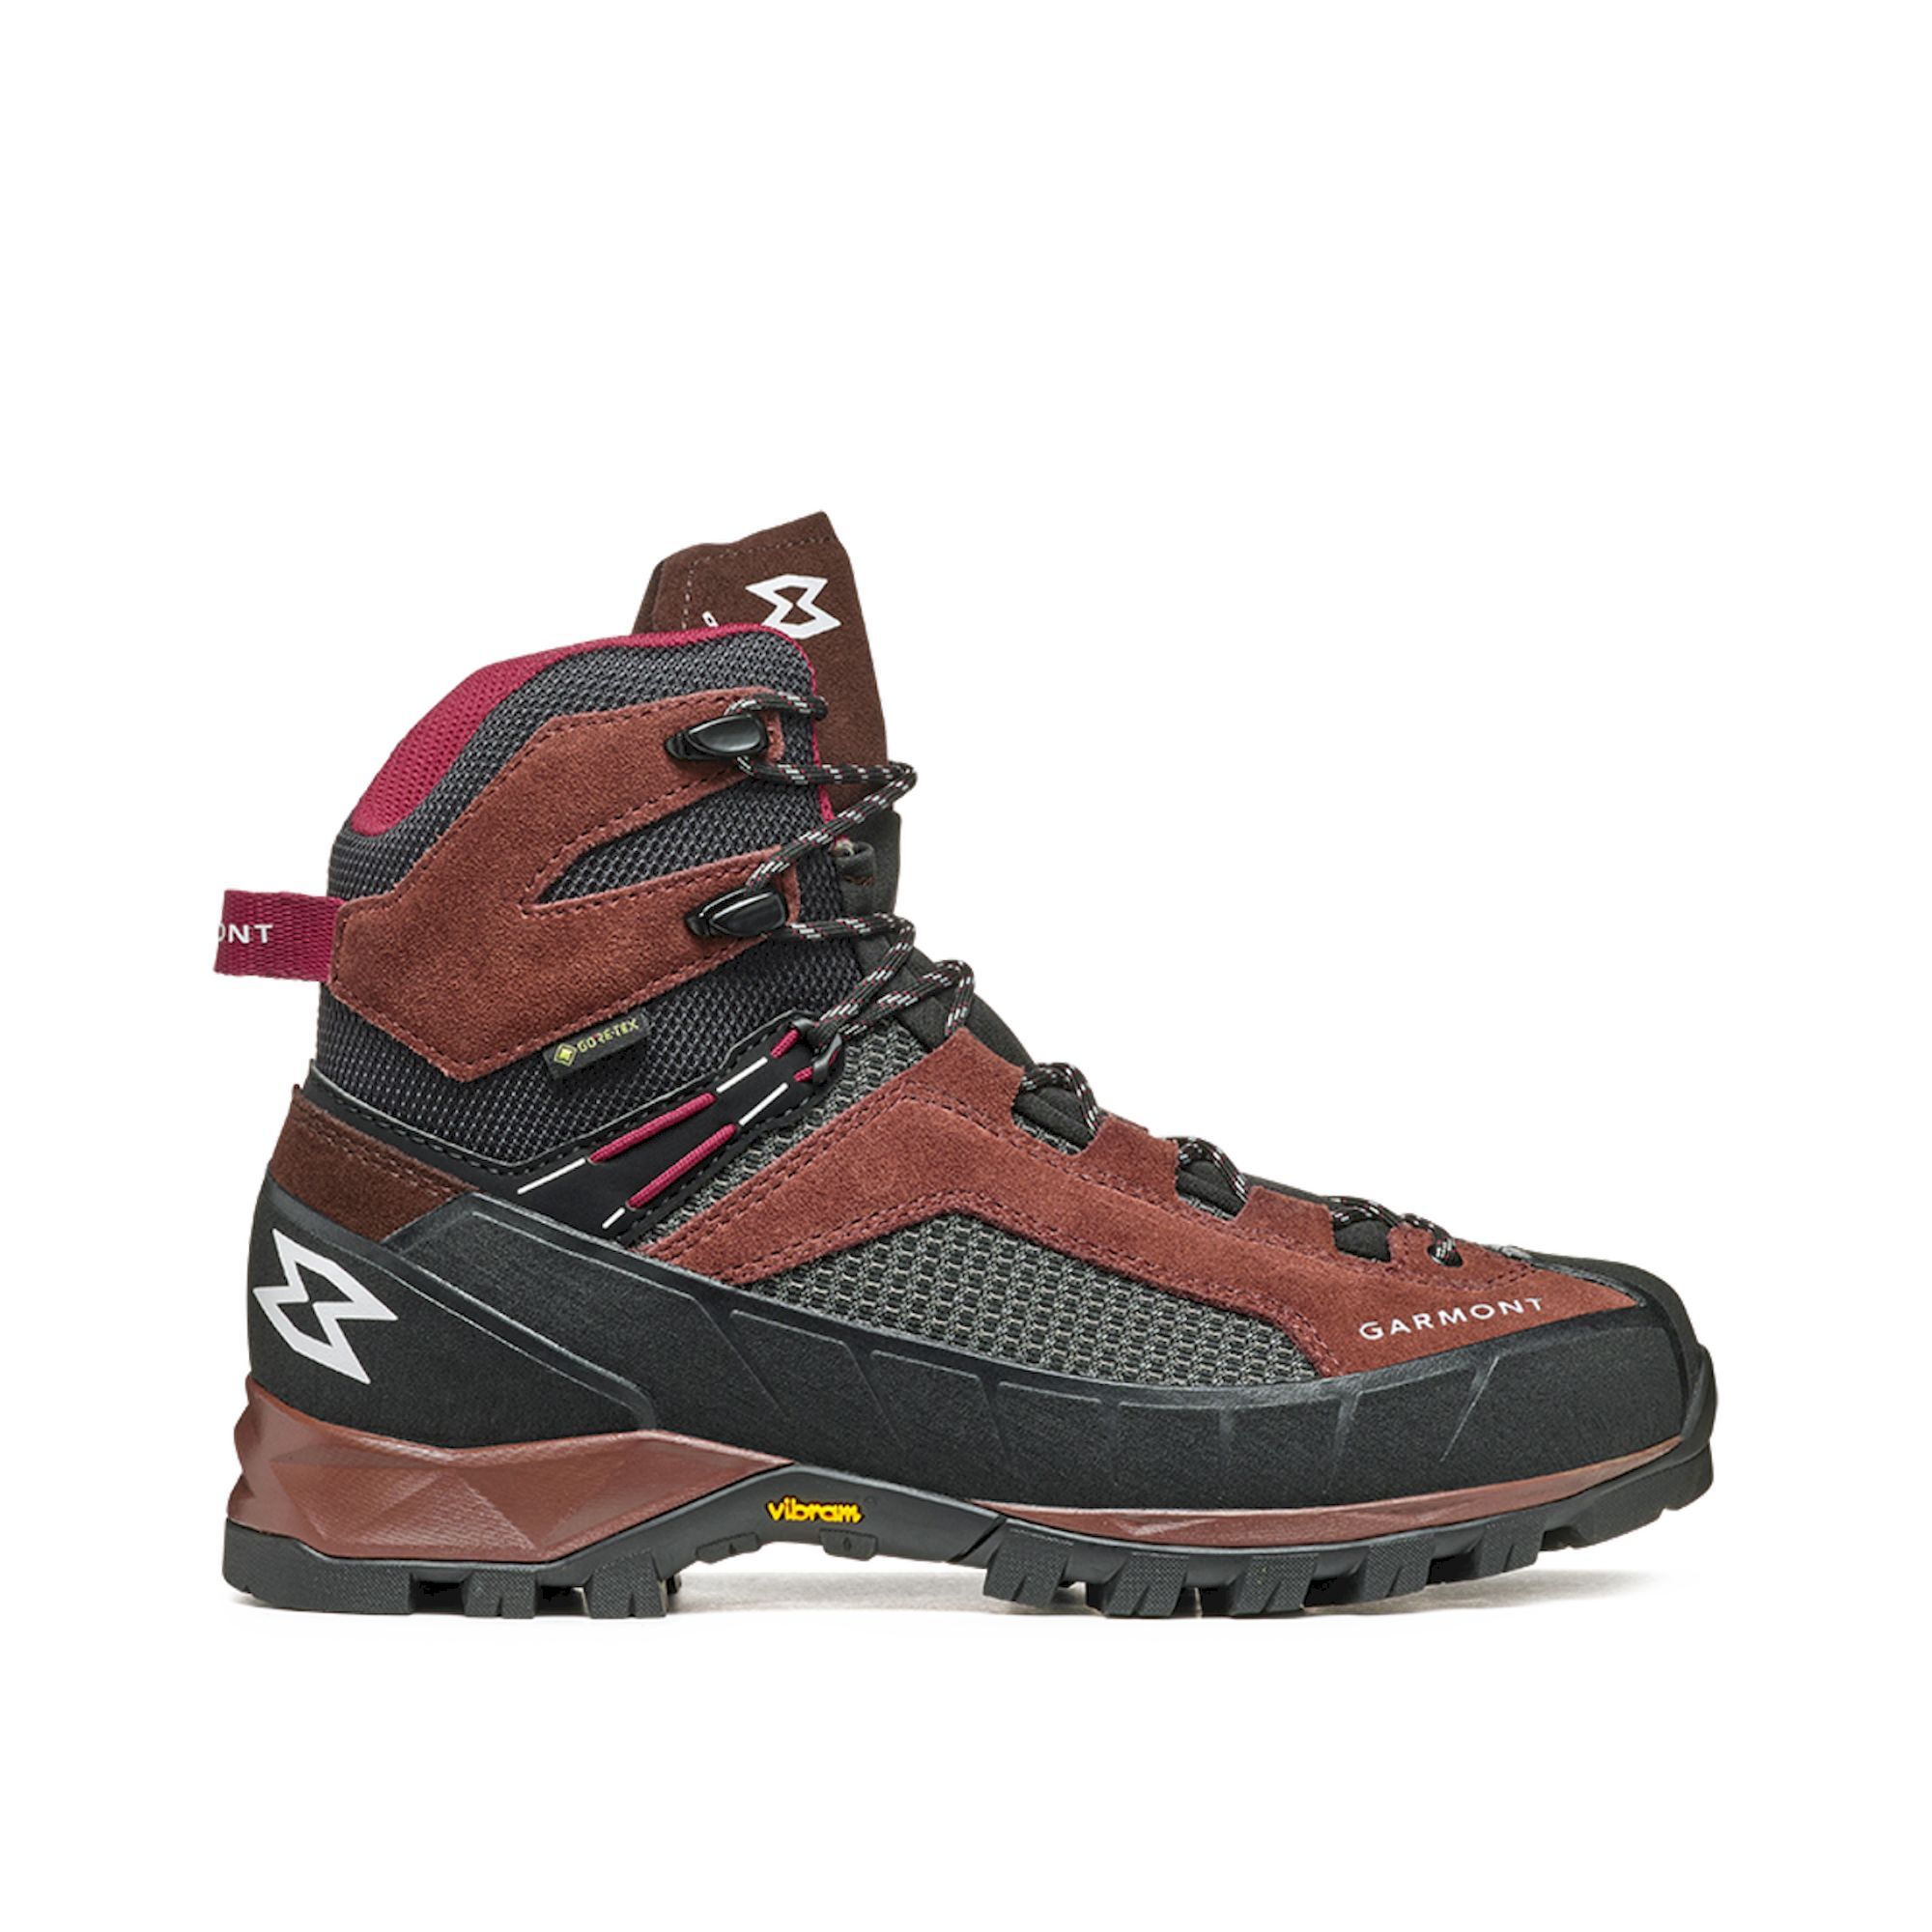 Garmont - Tower Trek GTX Wms - Hiking Boots - Women's